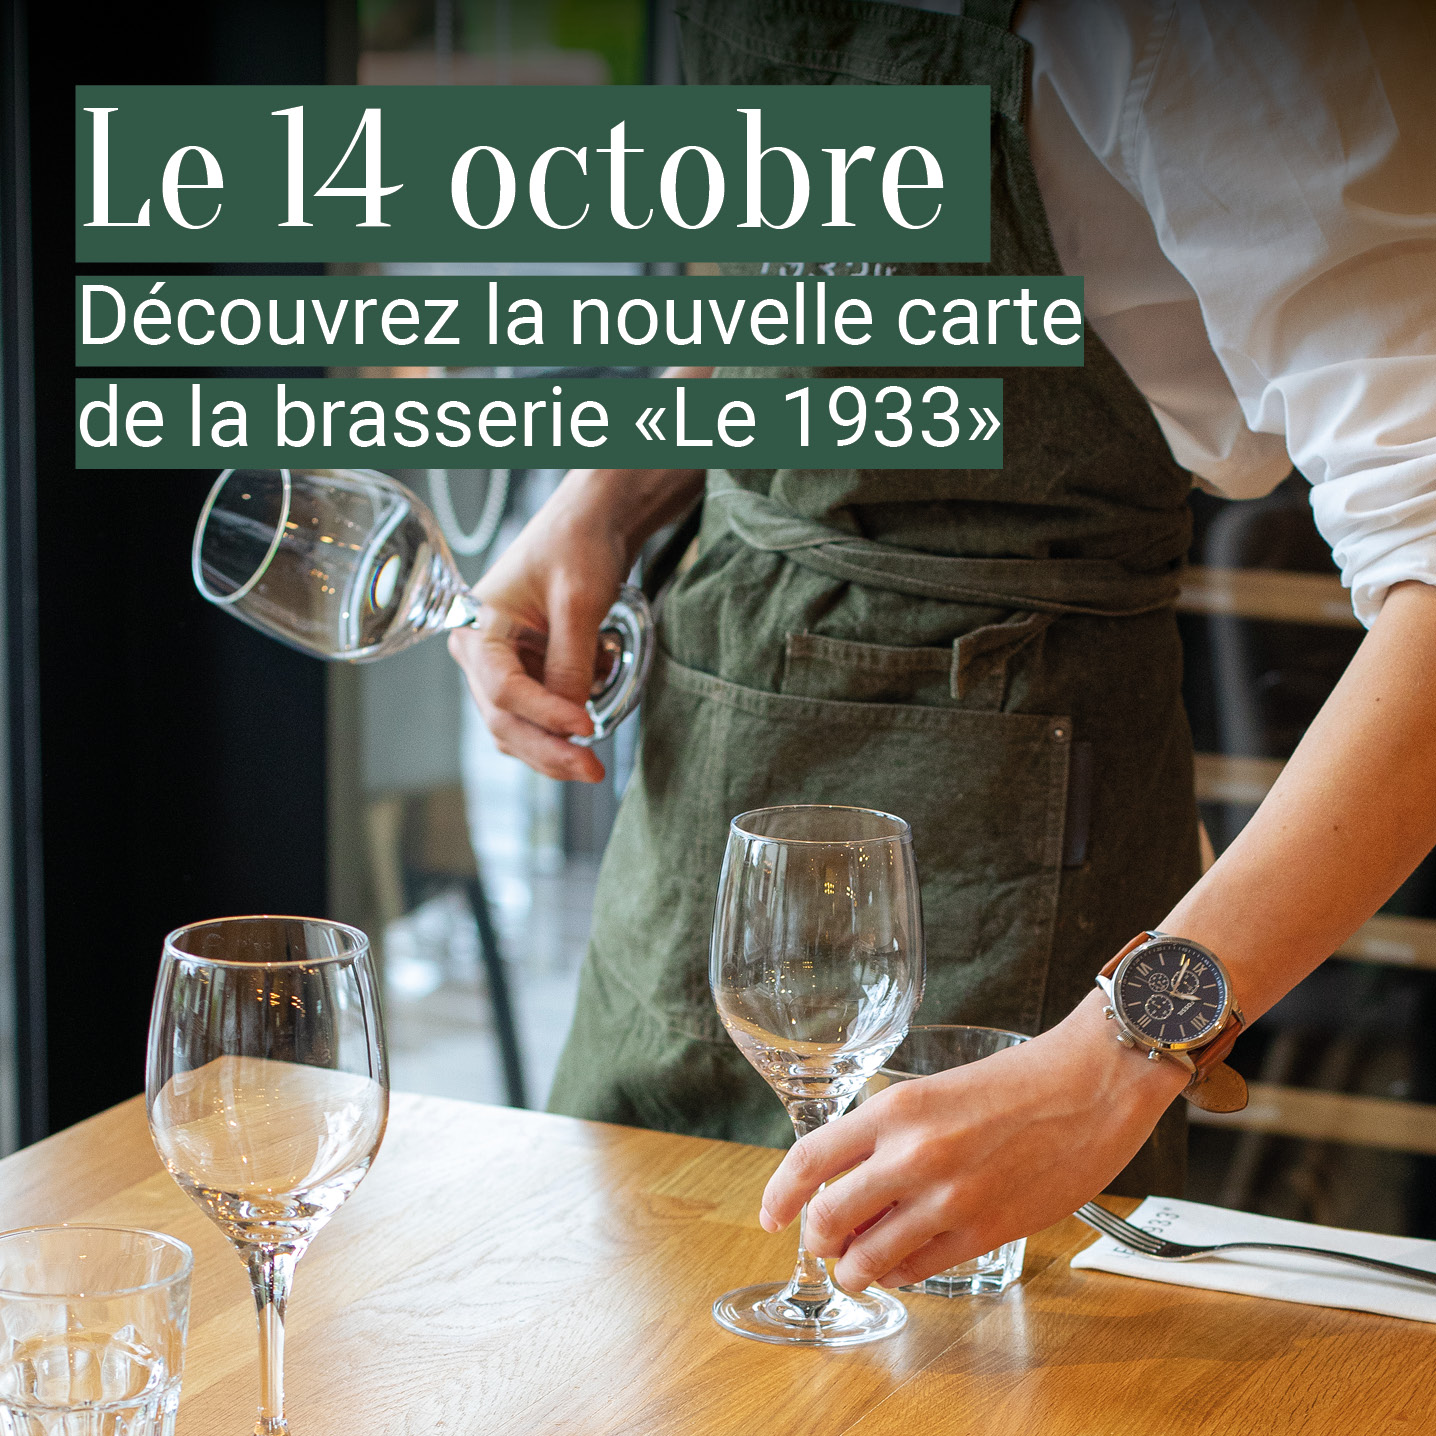 Le 14 octobre découvrez la nouvelle carte de la brasserie "Le 1933" à la Charpinière